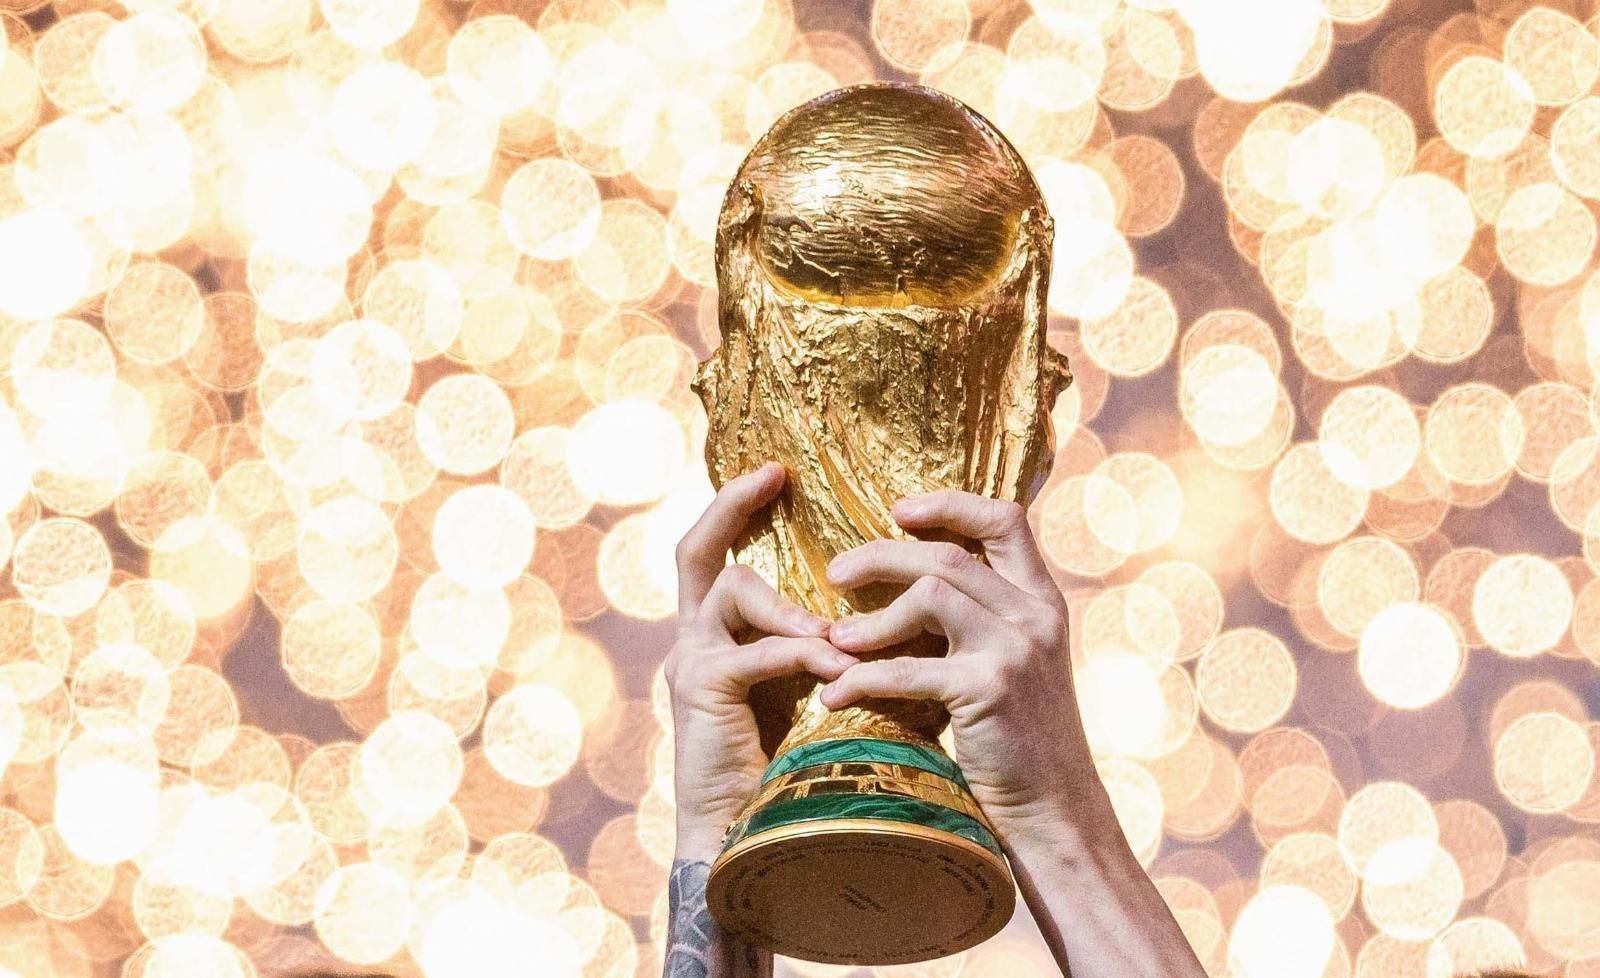 SEIS JOGOS NO MESMO DIA! Copa do Mundo de 2026 já tem datas e seu formato  oficializado 